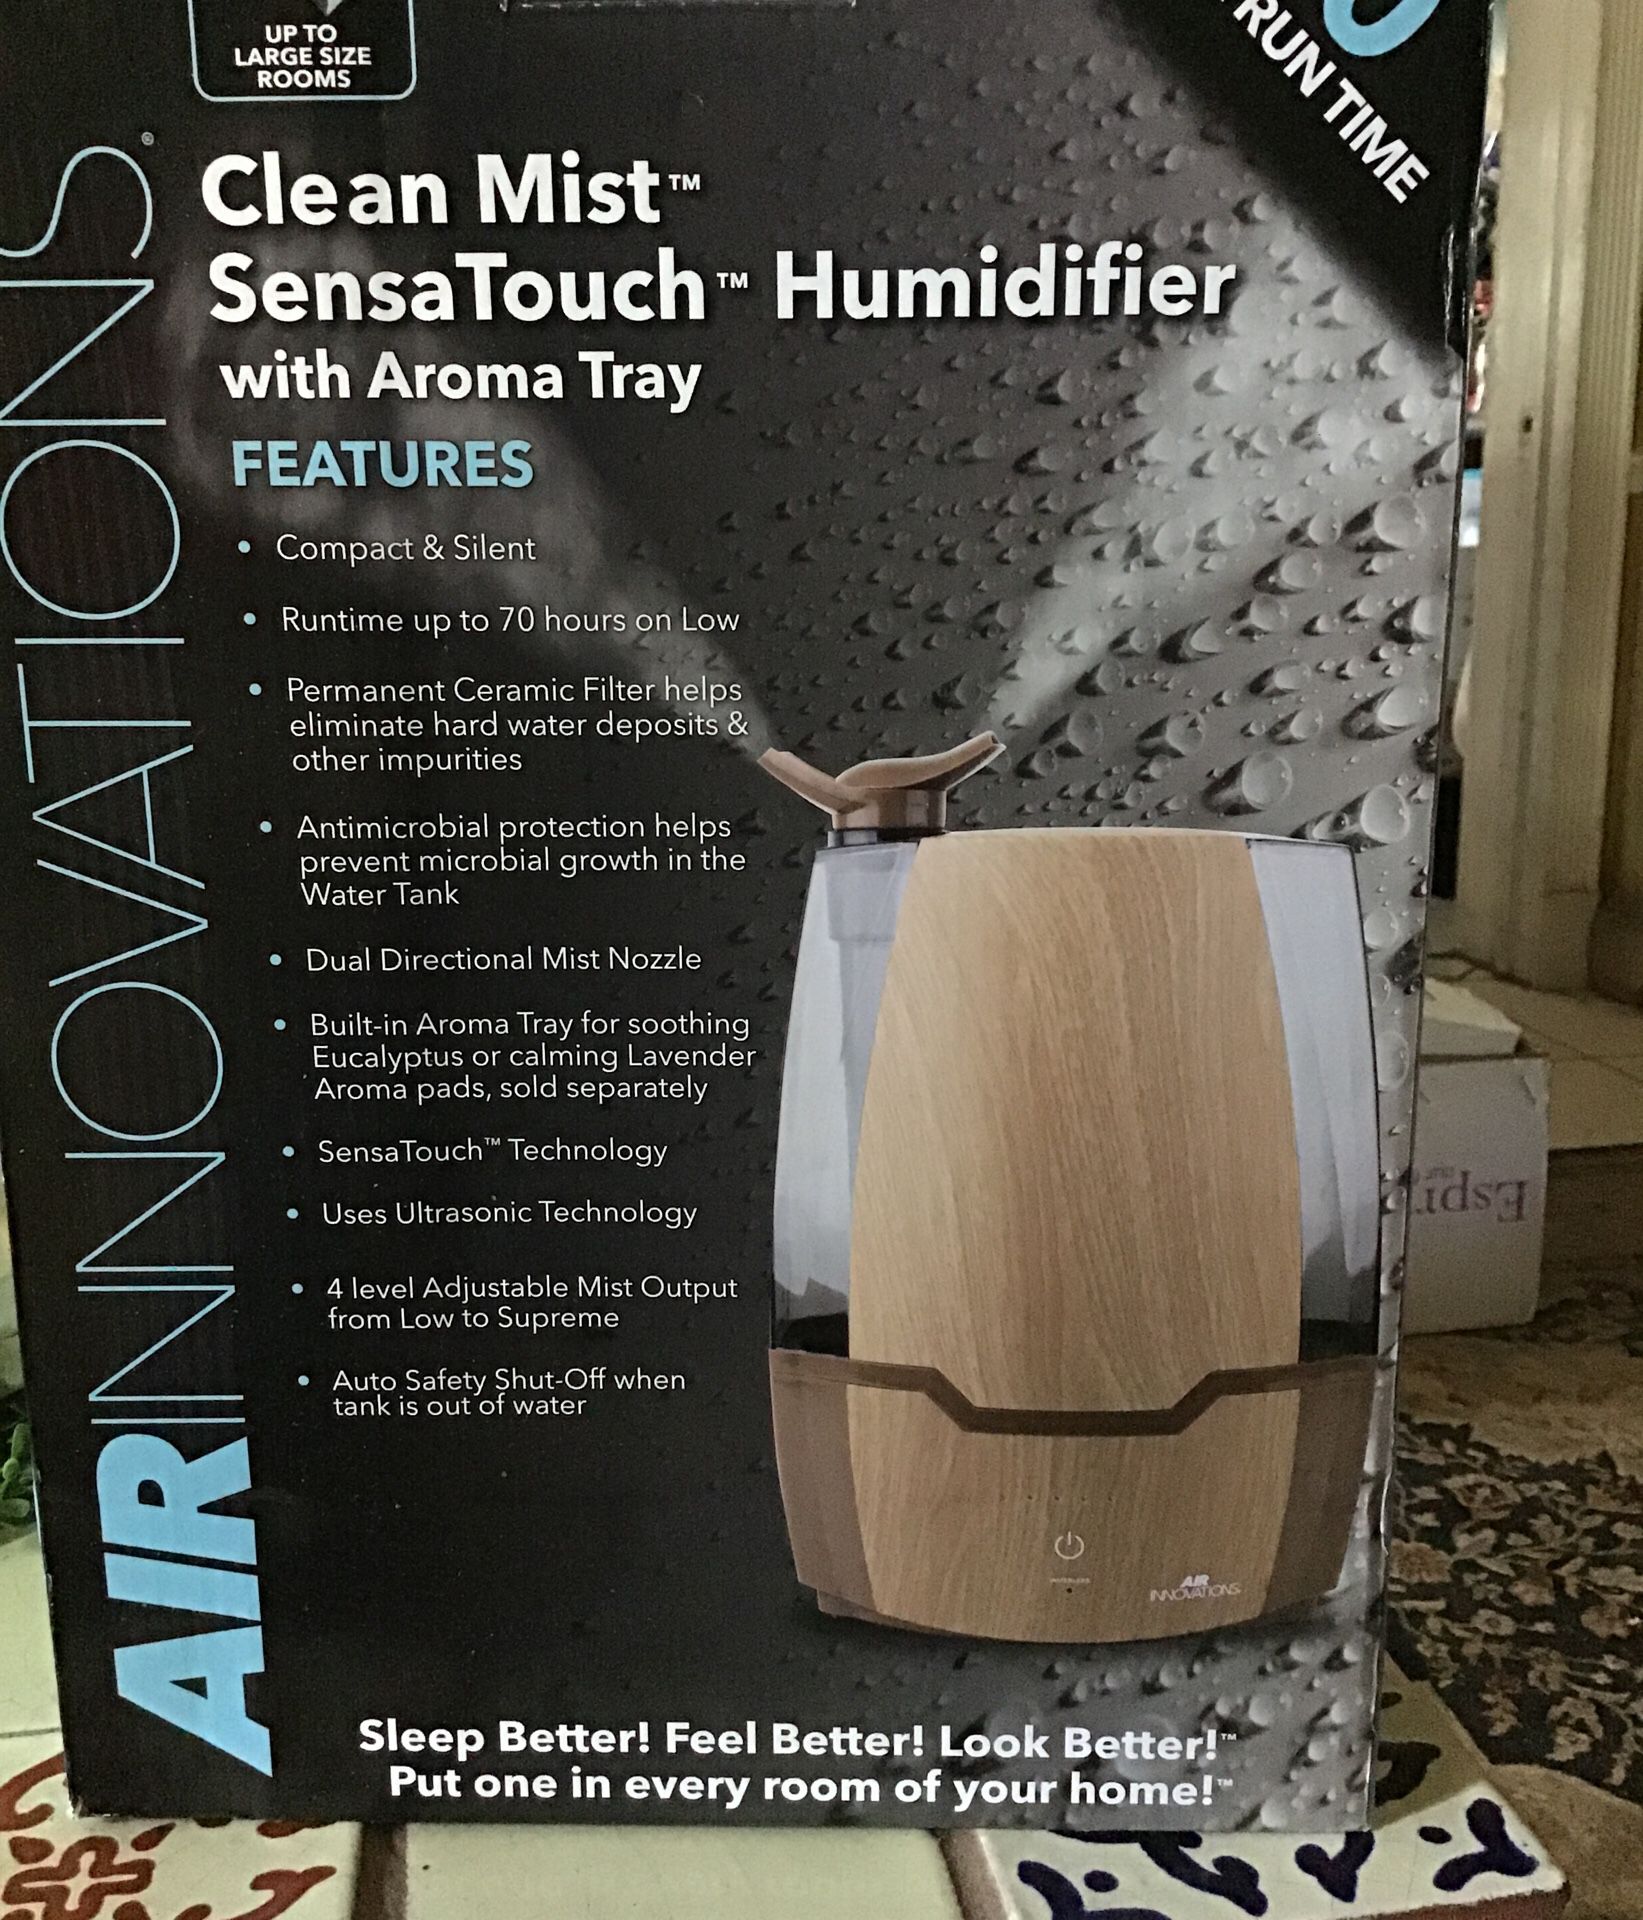 Clean mist sensa touch humidifier